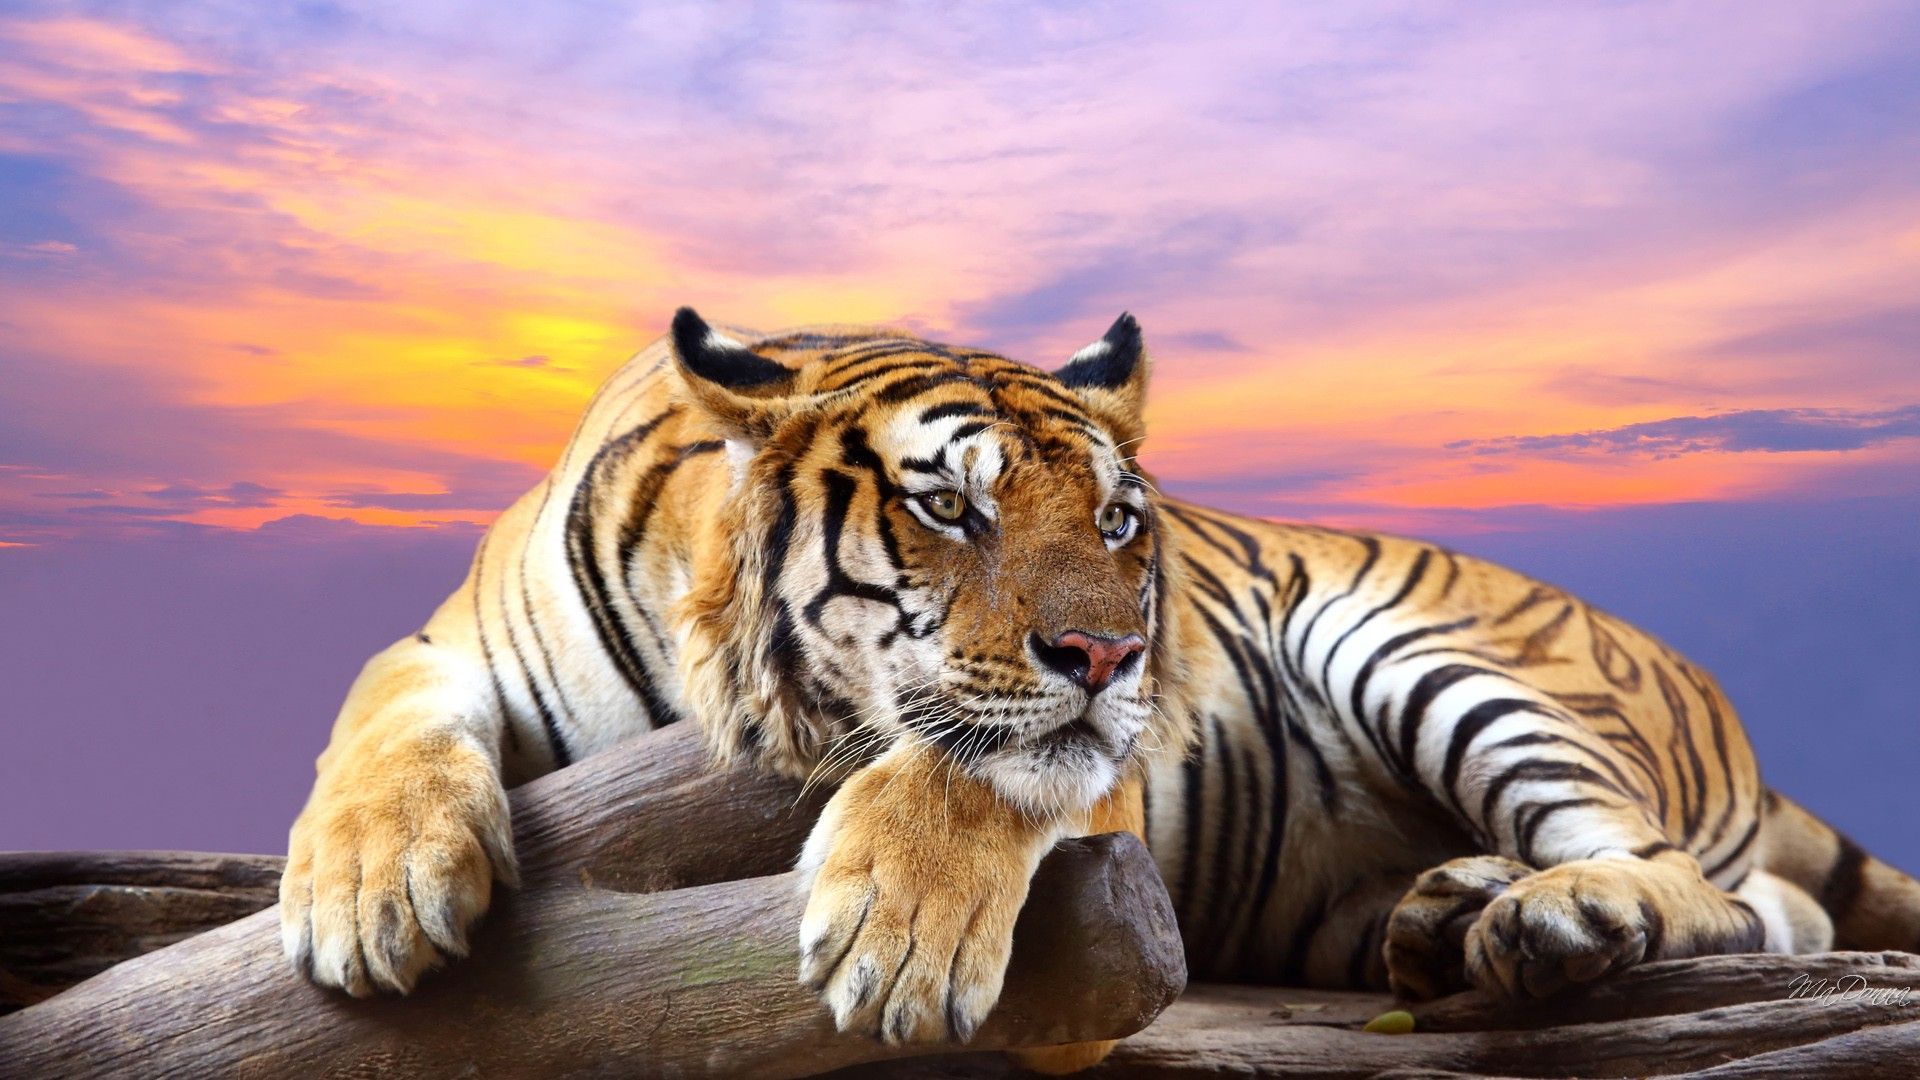 Tiger Wallpaper Desktop Background Free Download